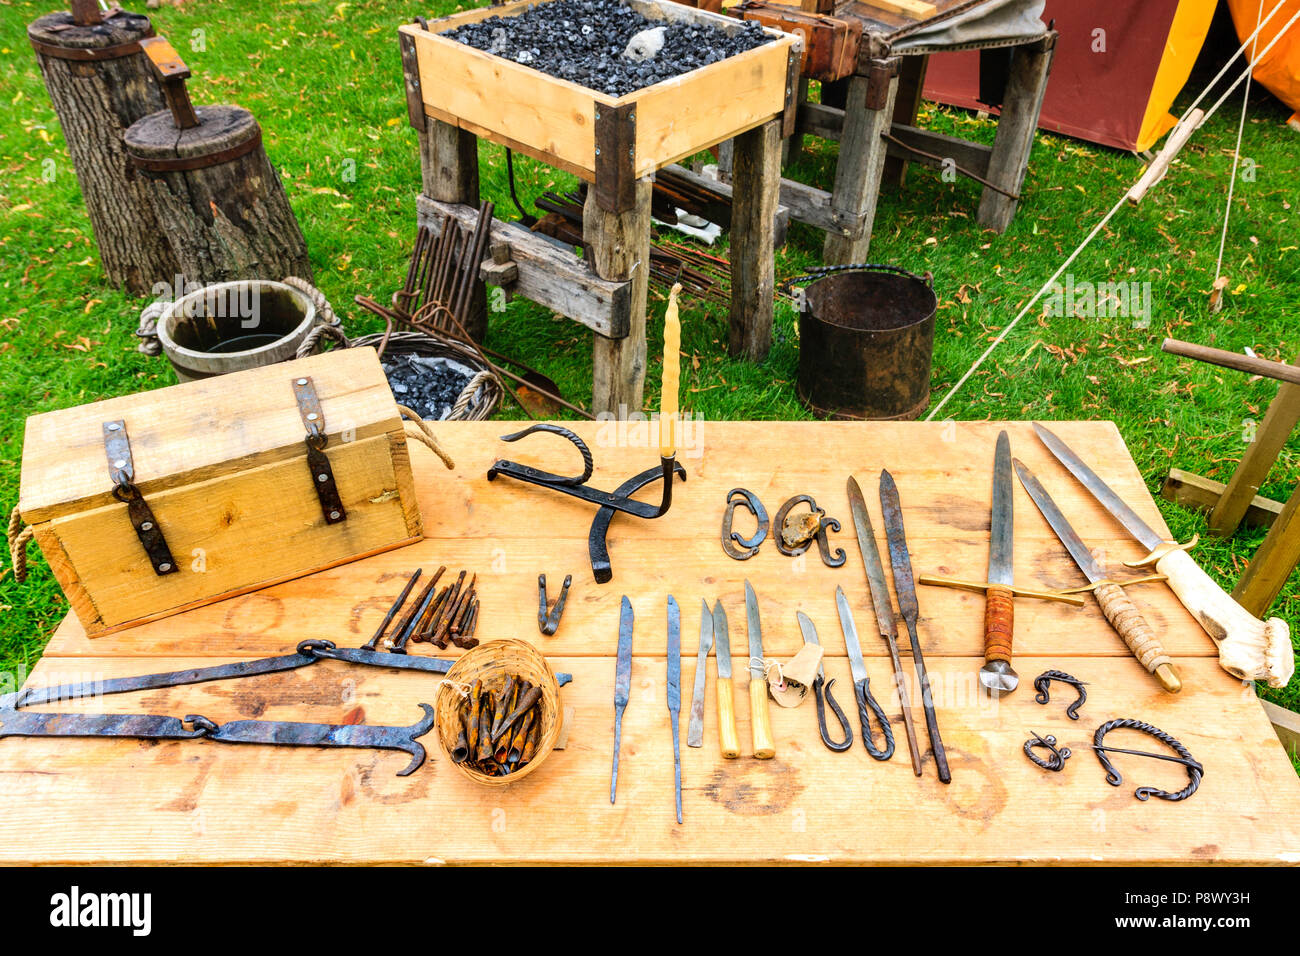 Rievocazione, storia vivente. Display sulla tabella dei vari strumenti che sono realizzati da fabbro medievale, coltelli, strumenti e pugnali. Foto Stock